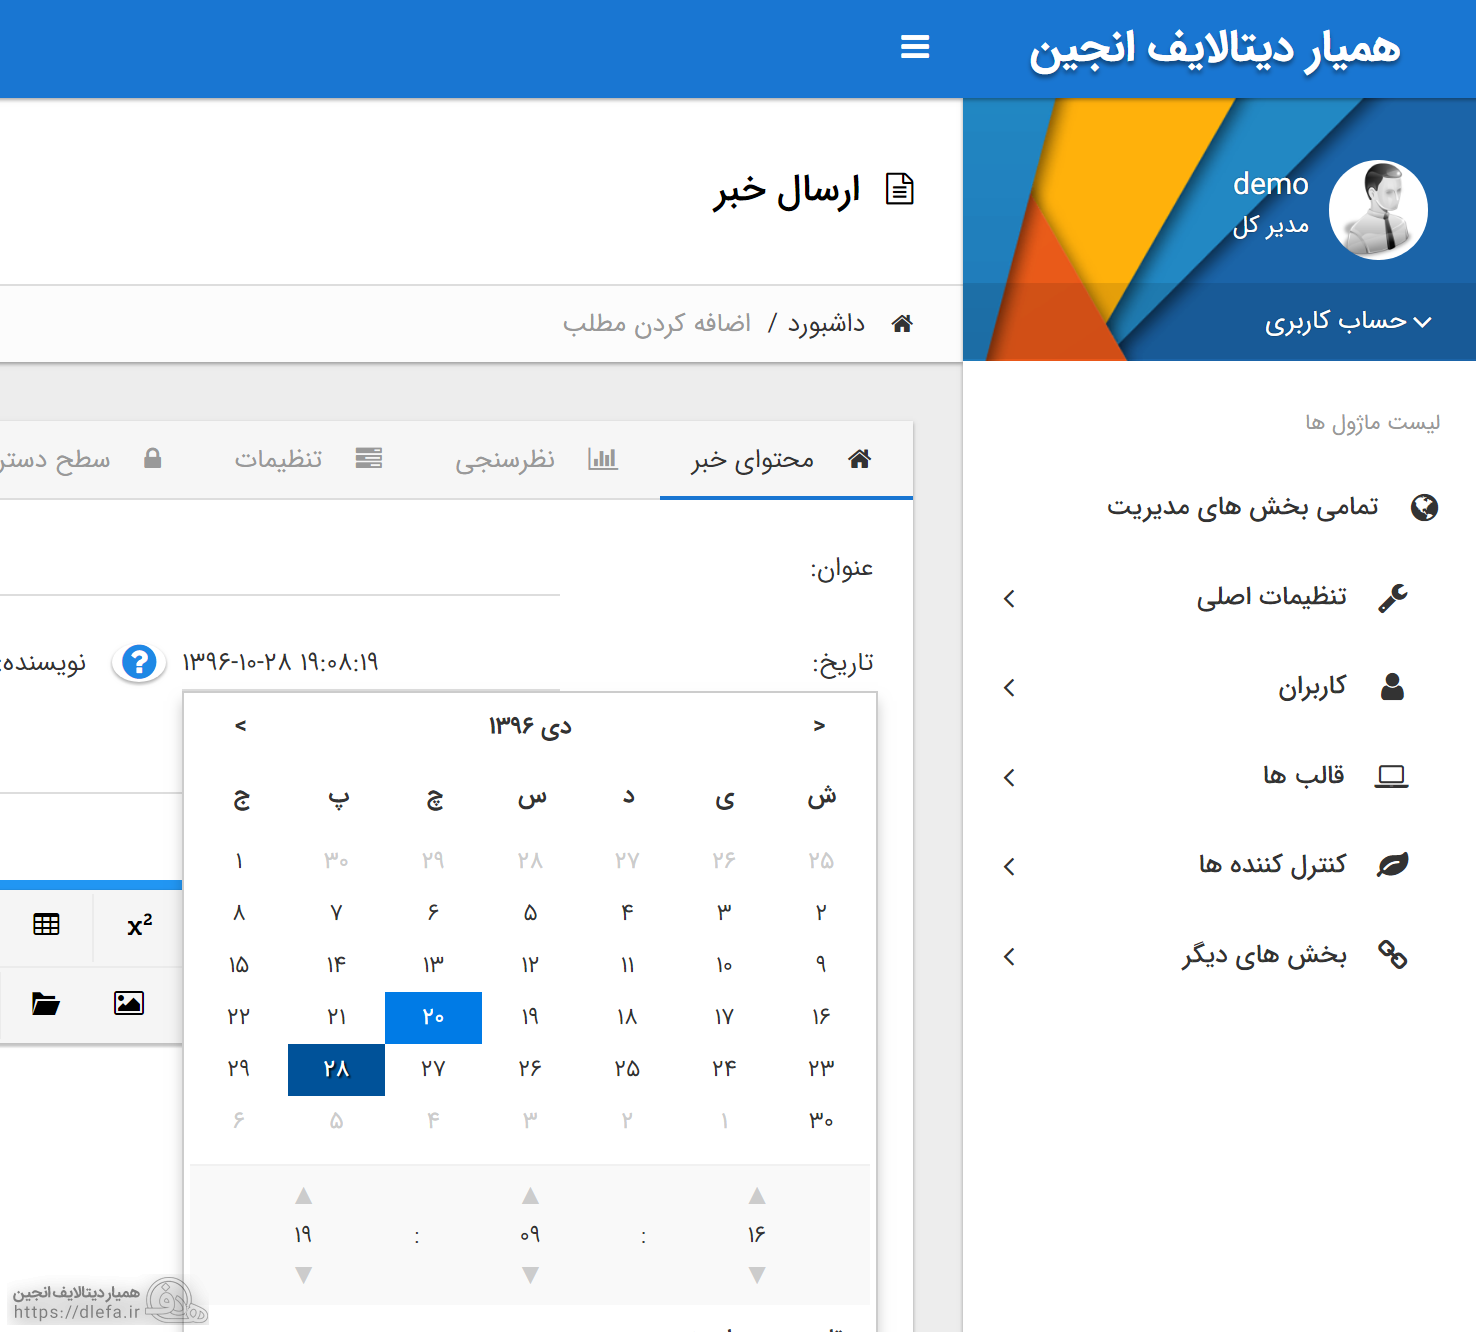 تقویم جدید نسخه 12.1 دیتالایف انجین فارسی